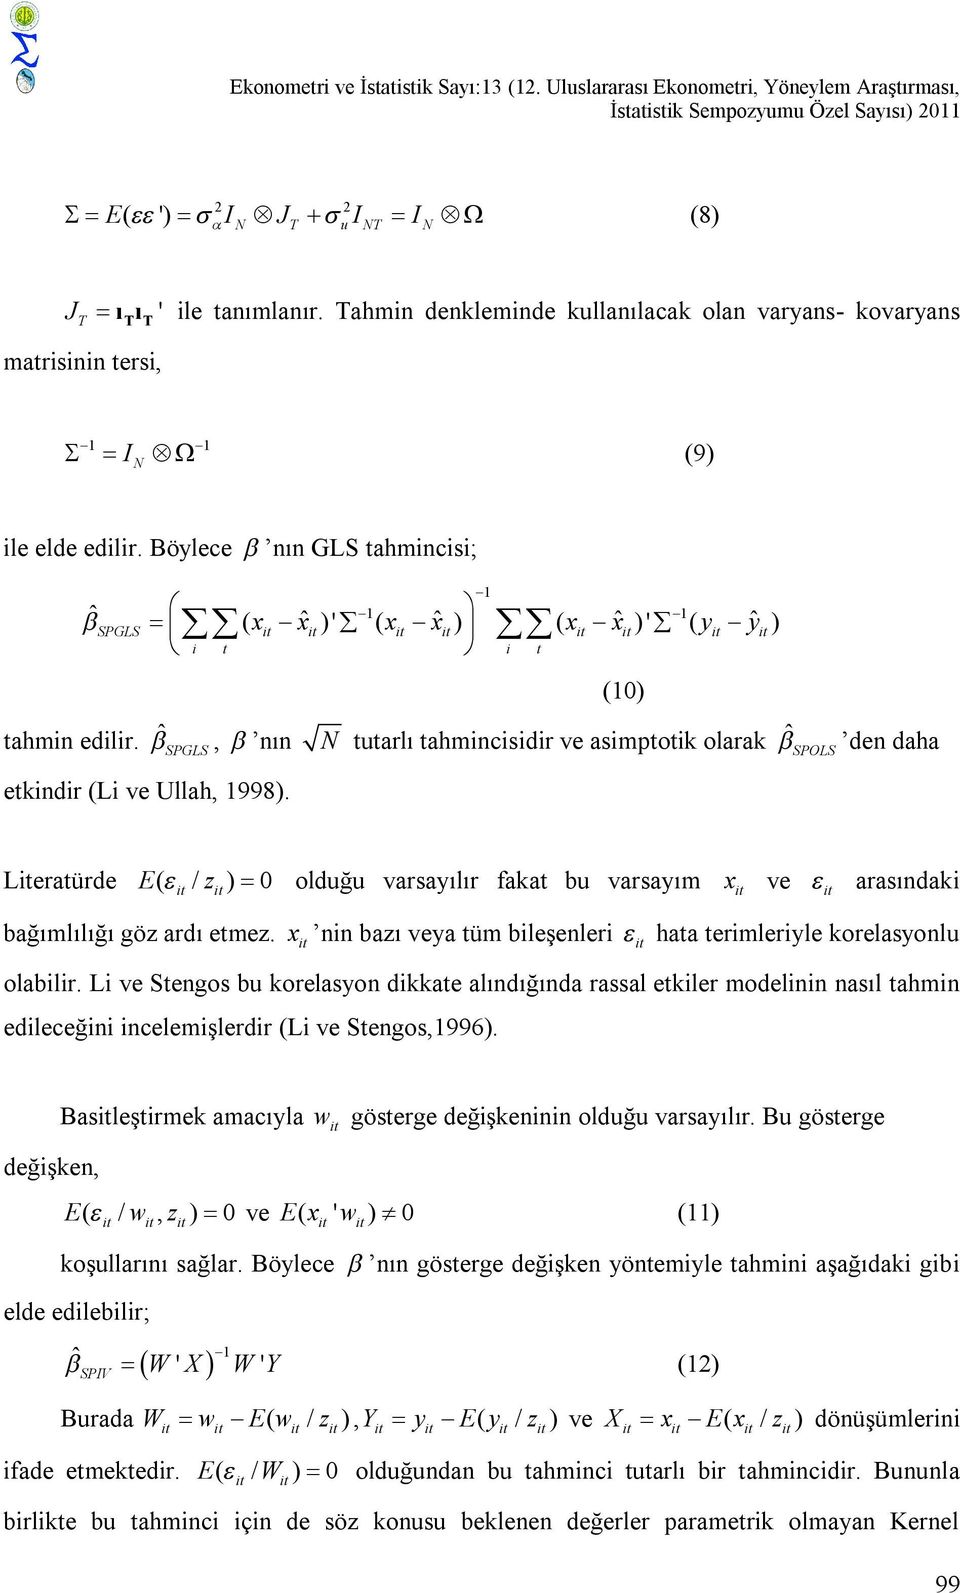 ˆSPGLS, nın N tutarlı tahmncsdr ve asmptotk olarak ˆSPOLS den daha etkndr (L ve Ullah, 1998). (10) Leratürde E( / z ) 0 olduğu varsayılır fakat bu varsayım x ve arasındak bağımlılığı göz ardı etmez.